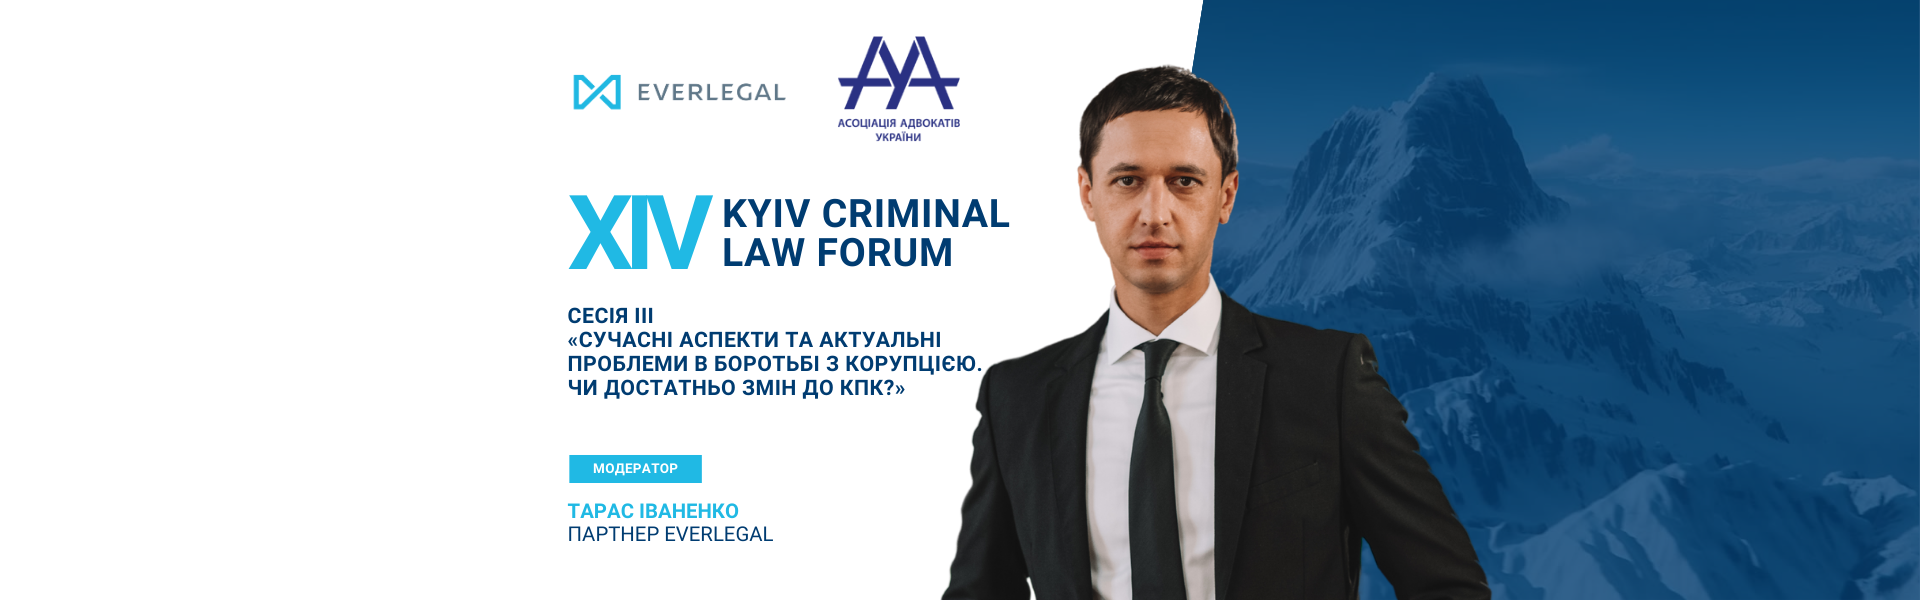 Запрошуємо вас на XIV Kyiv Criminal Law Forum